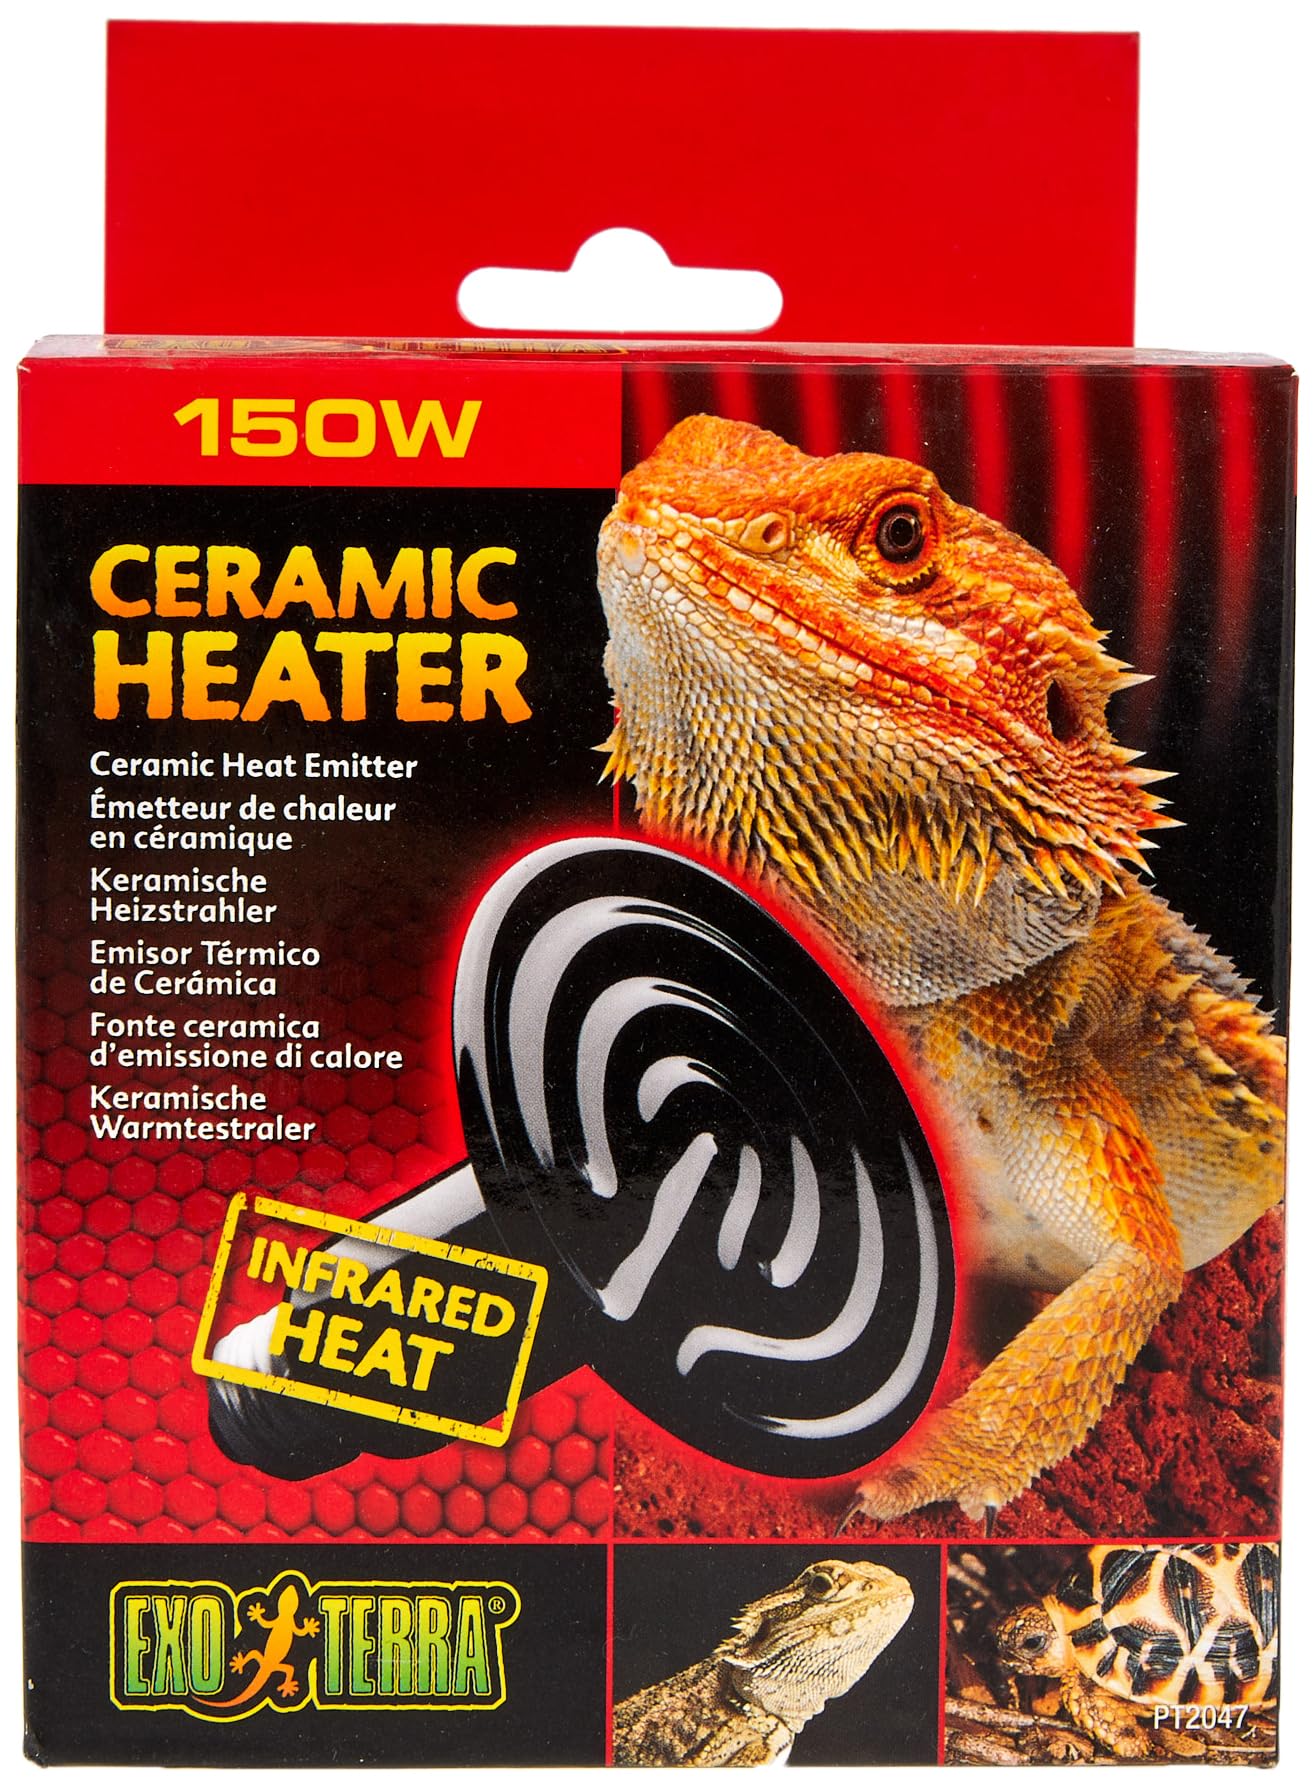 Exo Terra Ceramic Heater, keramischer Heizstrahler für Reptilien, 150W, Fassung E27, 250 g (1er Pack)